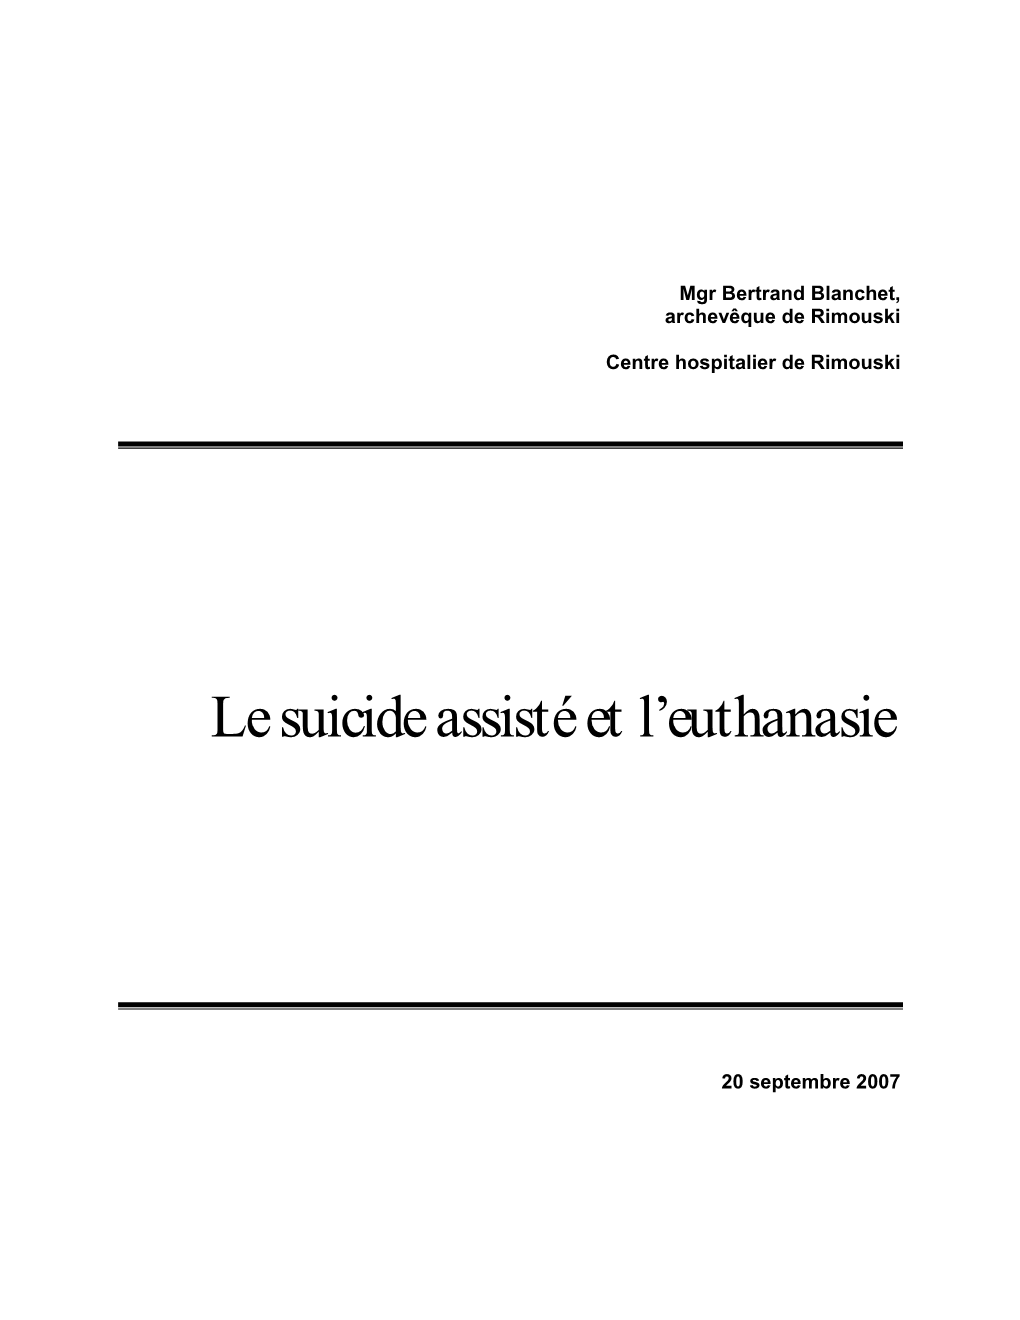 Le Suicide Assisté Et L'euthanasie